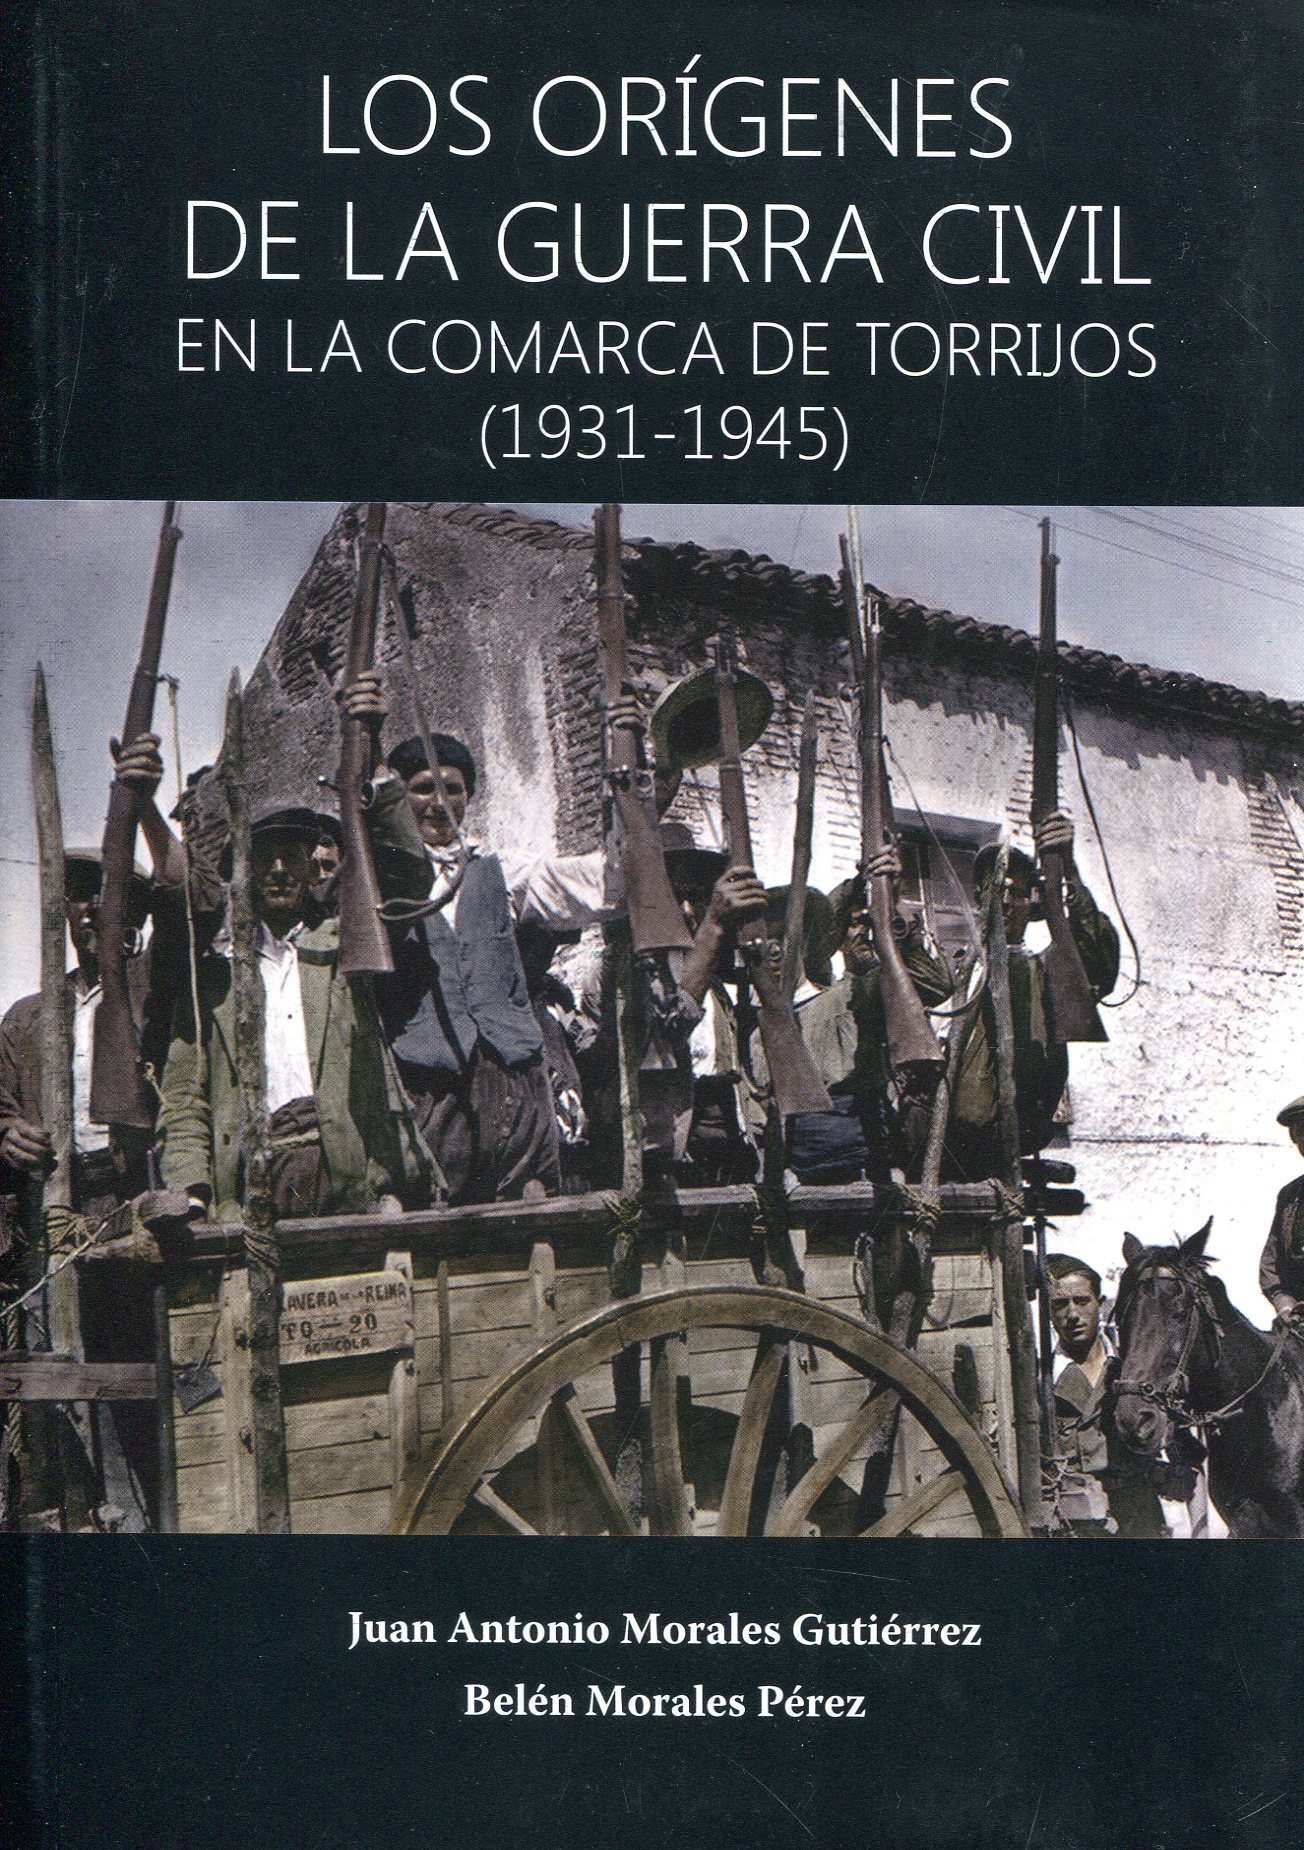 Orígenes de la Guerra Civil en la comarca de Torrijos. 9788409232703